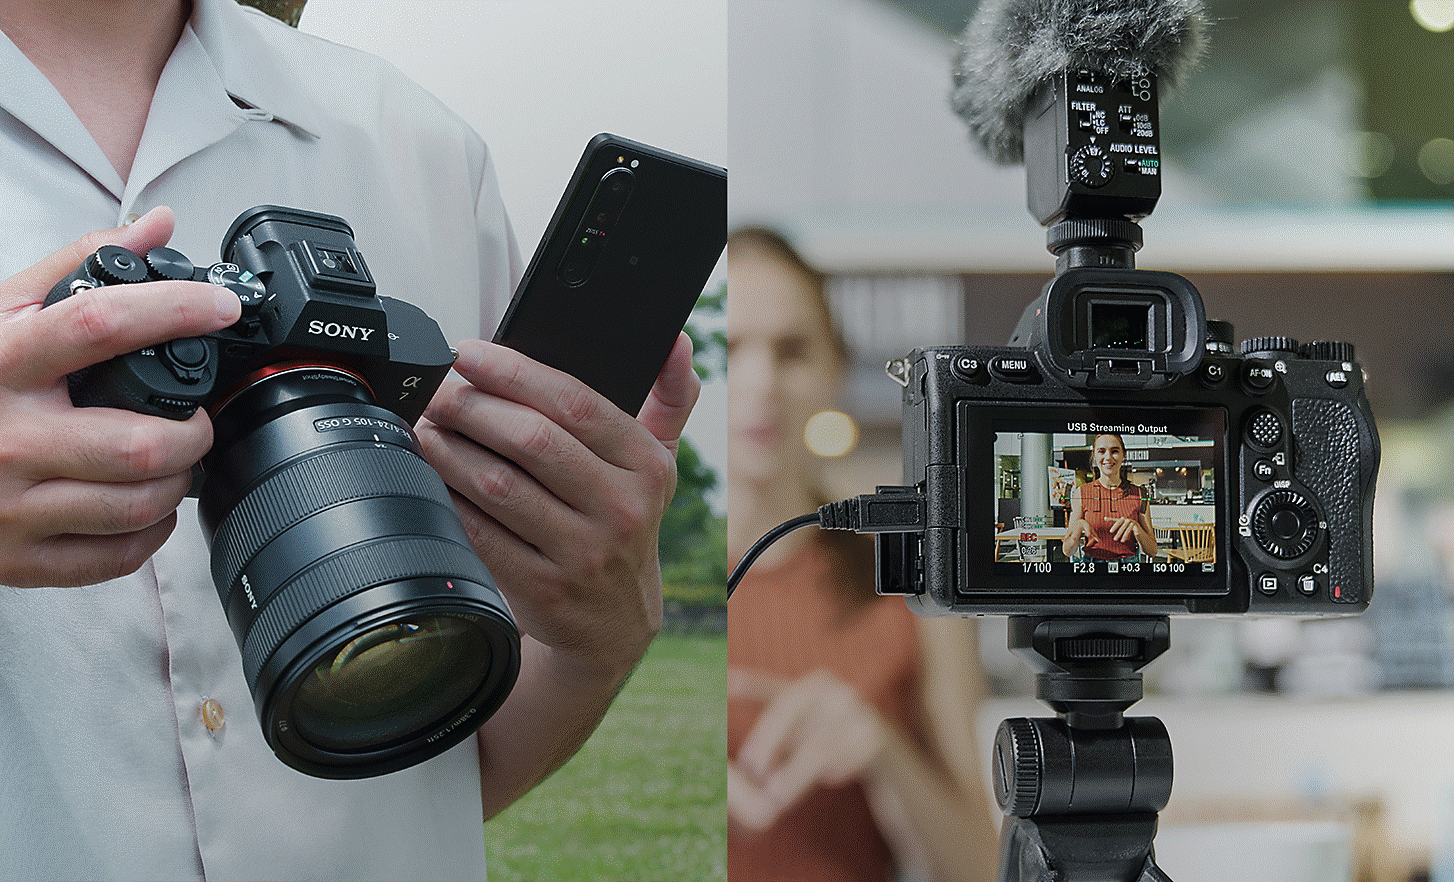 À gauche : personne tenant l'Alpha 7 IV et un smartphone pour partager des photos ou des vidéos juste après la prise ; à droite : personne effectuant un streaming en direct avec l'Alpha 7 IV